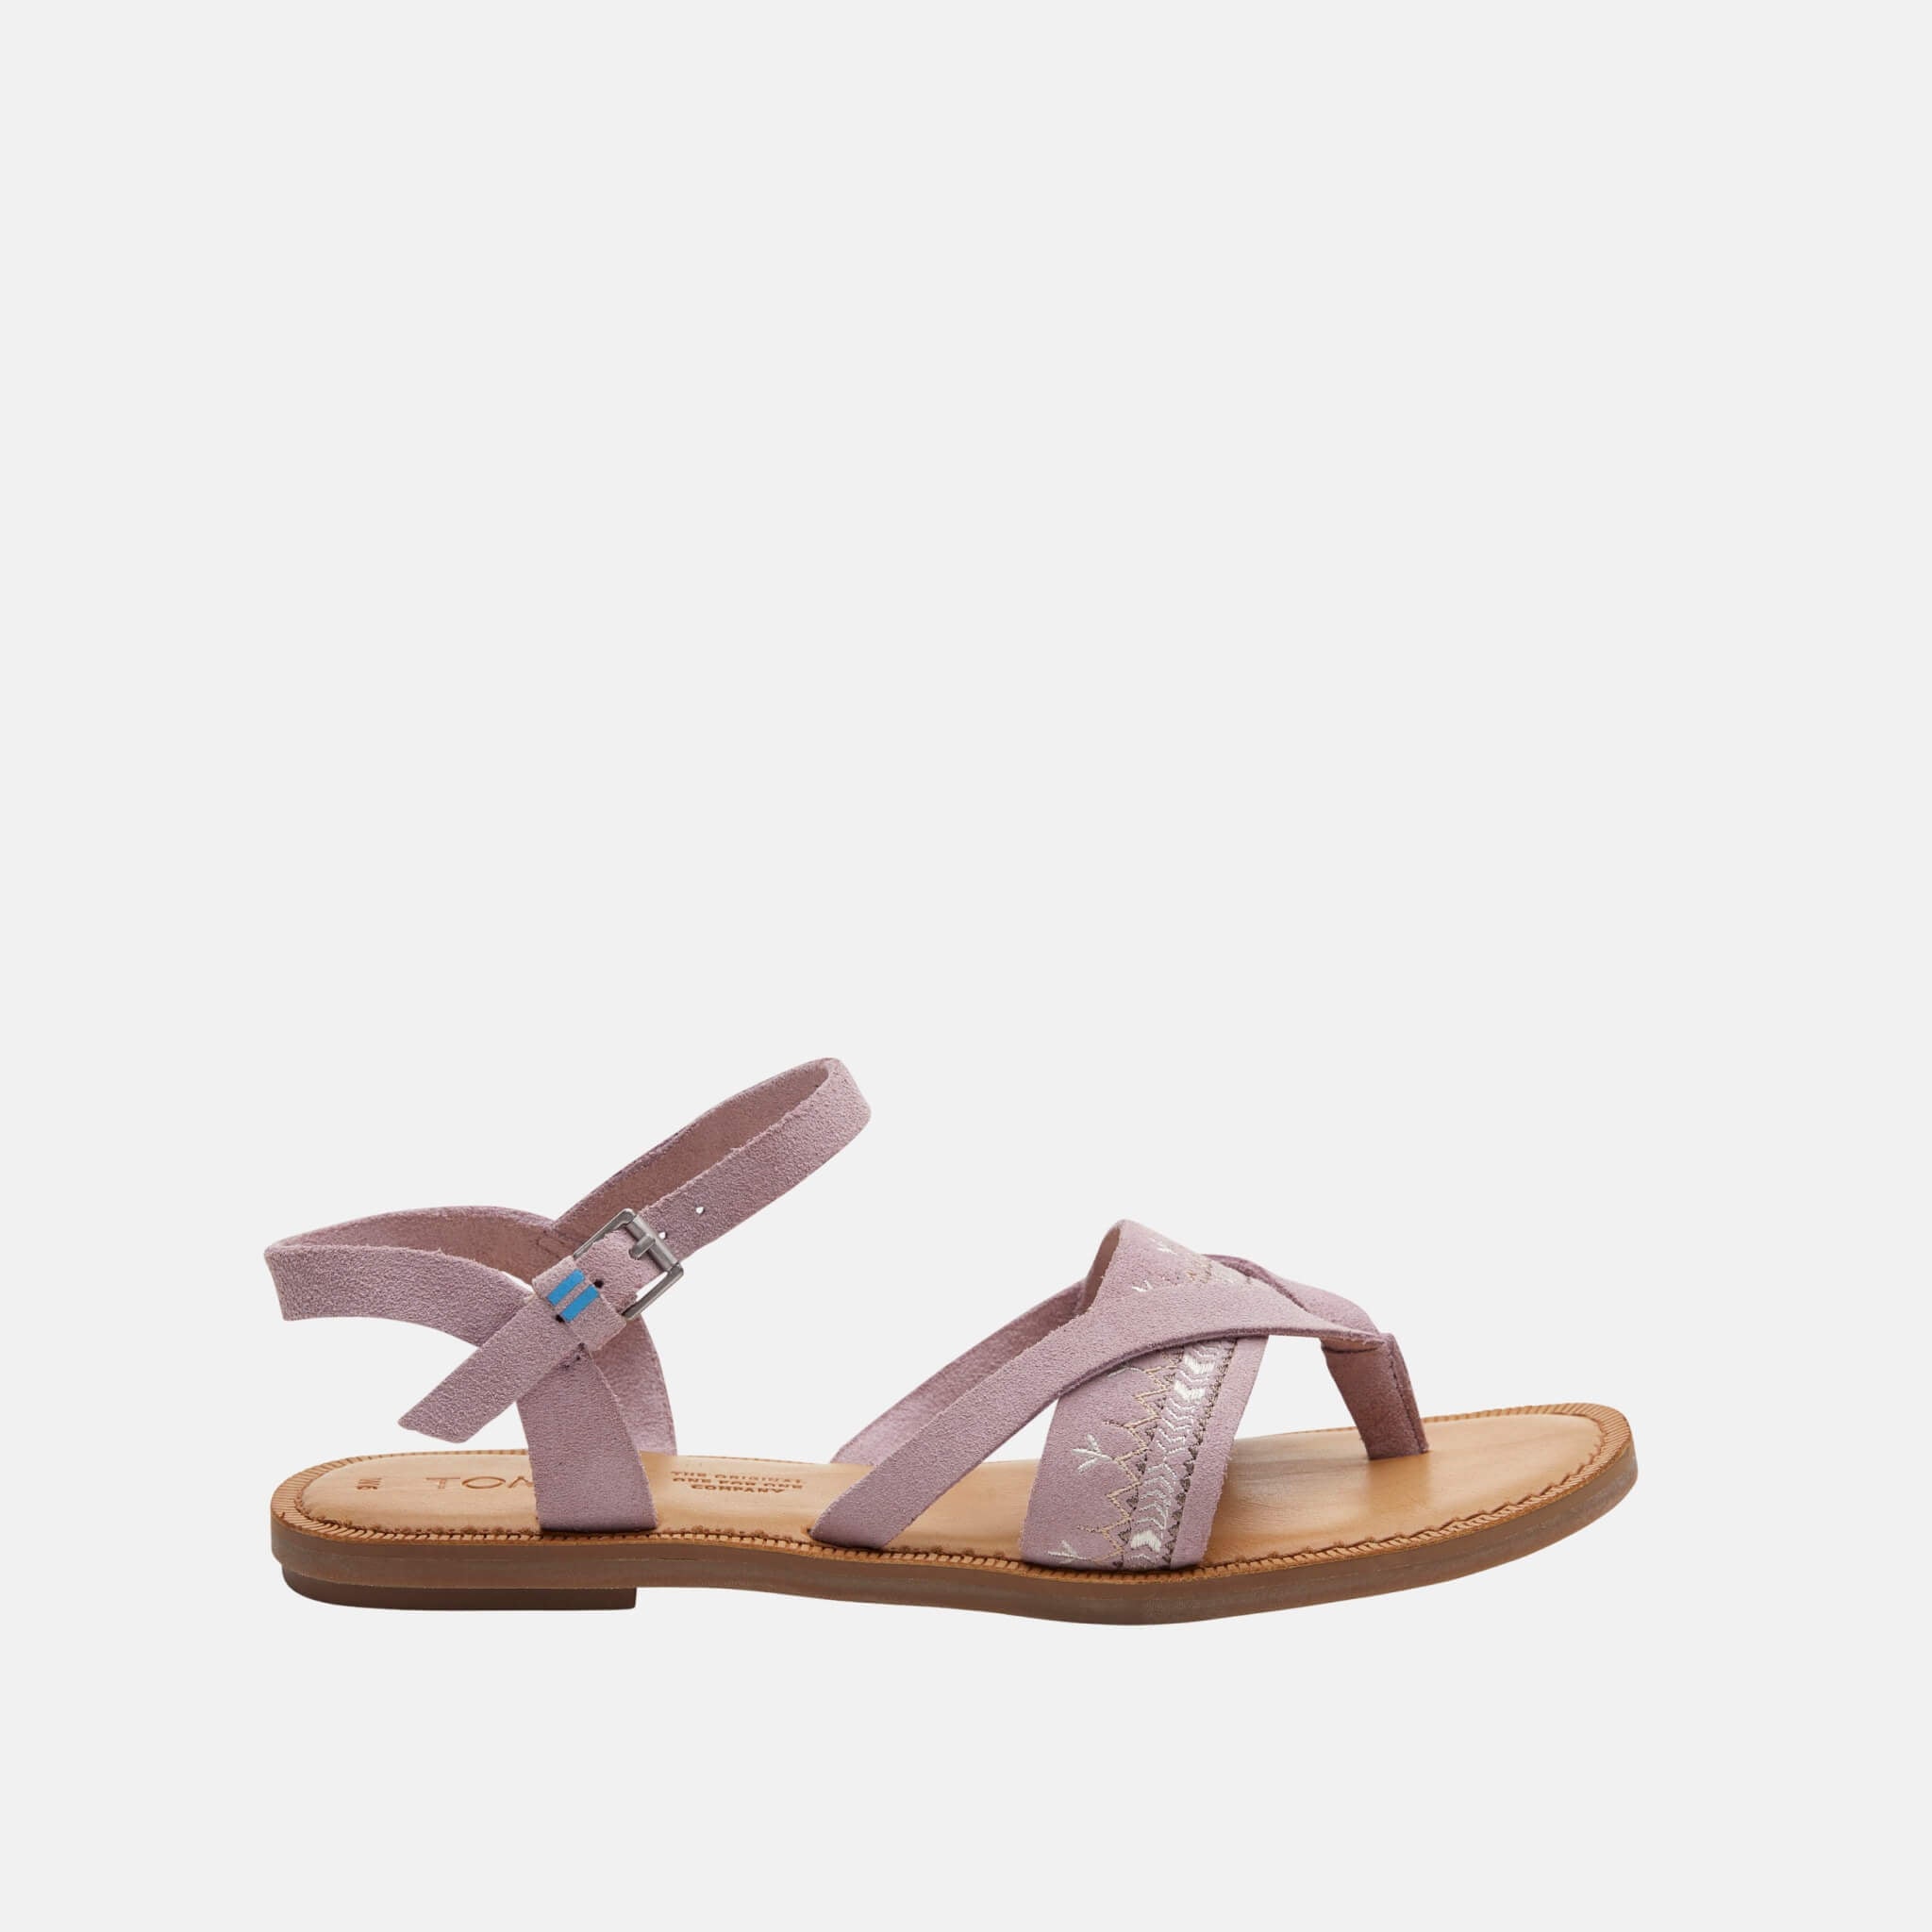 Dámské světle fialové sandálky TOMS Lexie Sandals